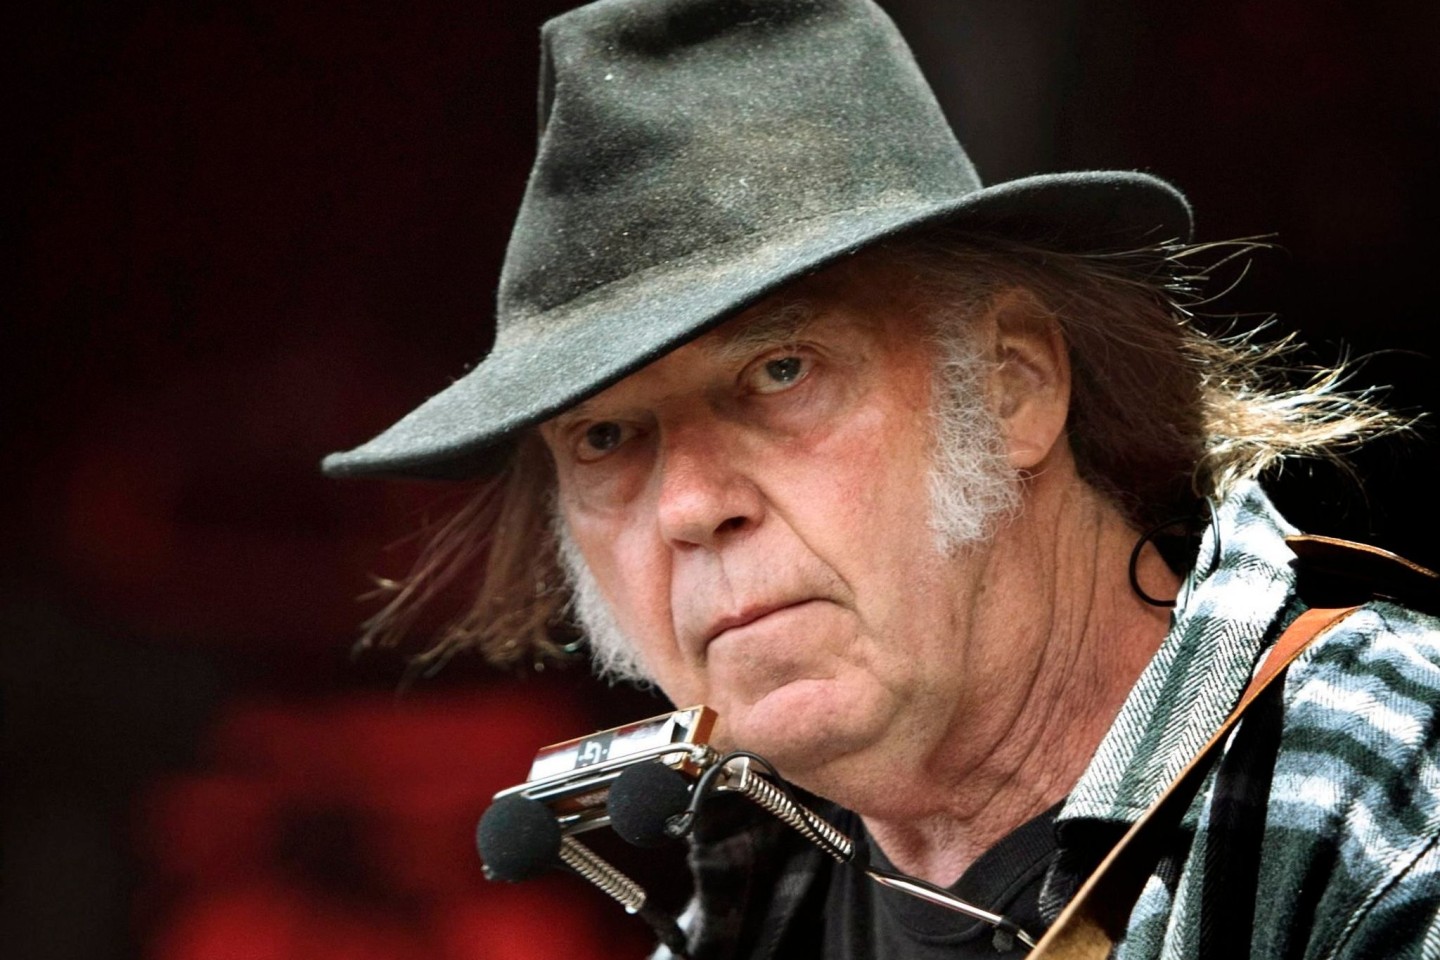 Weil sie Falschinformationen über Corona-Impfstoffe verbreitet haben soll, hat der kanadische Rockstar Neil Young die Audio-Plattform Spotify scharf kritisiert.